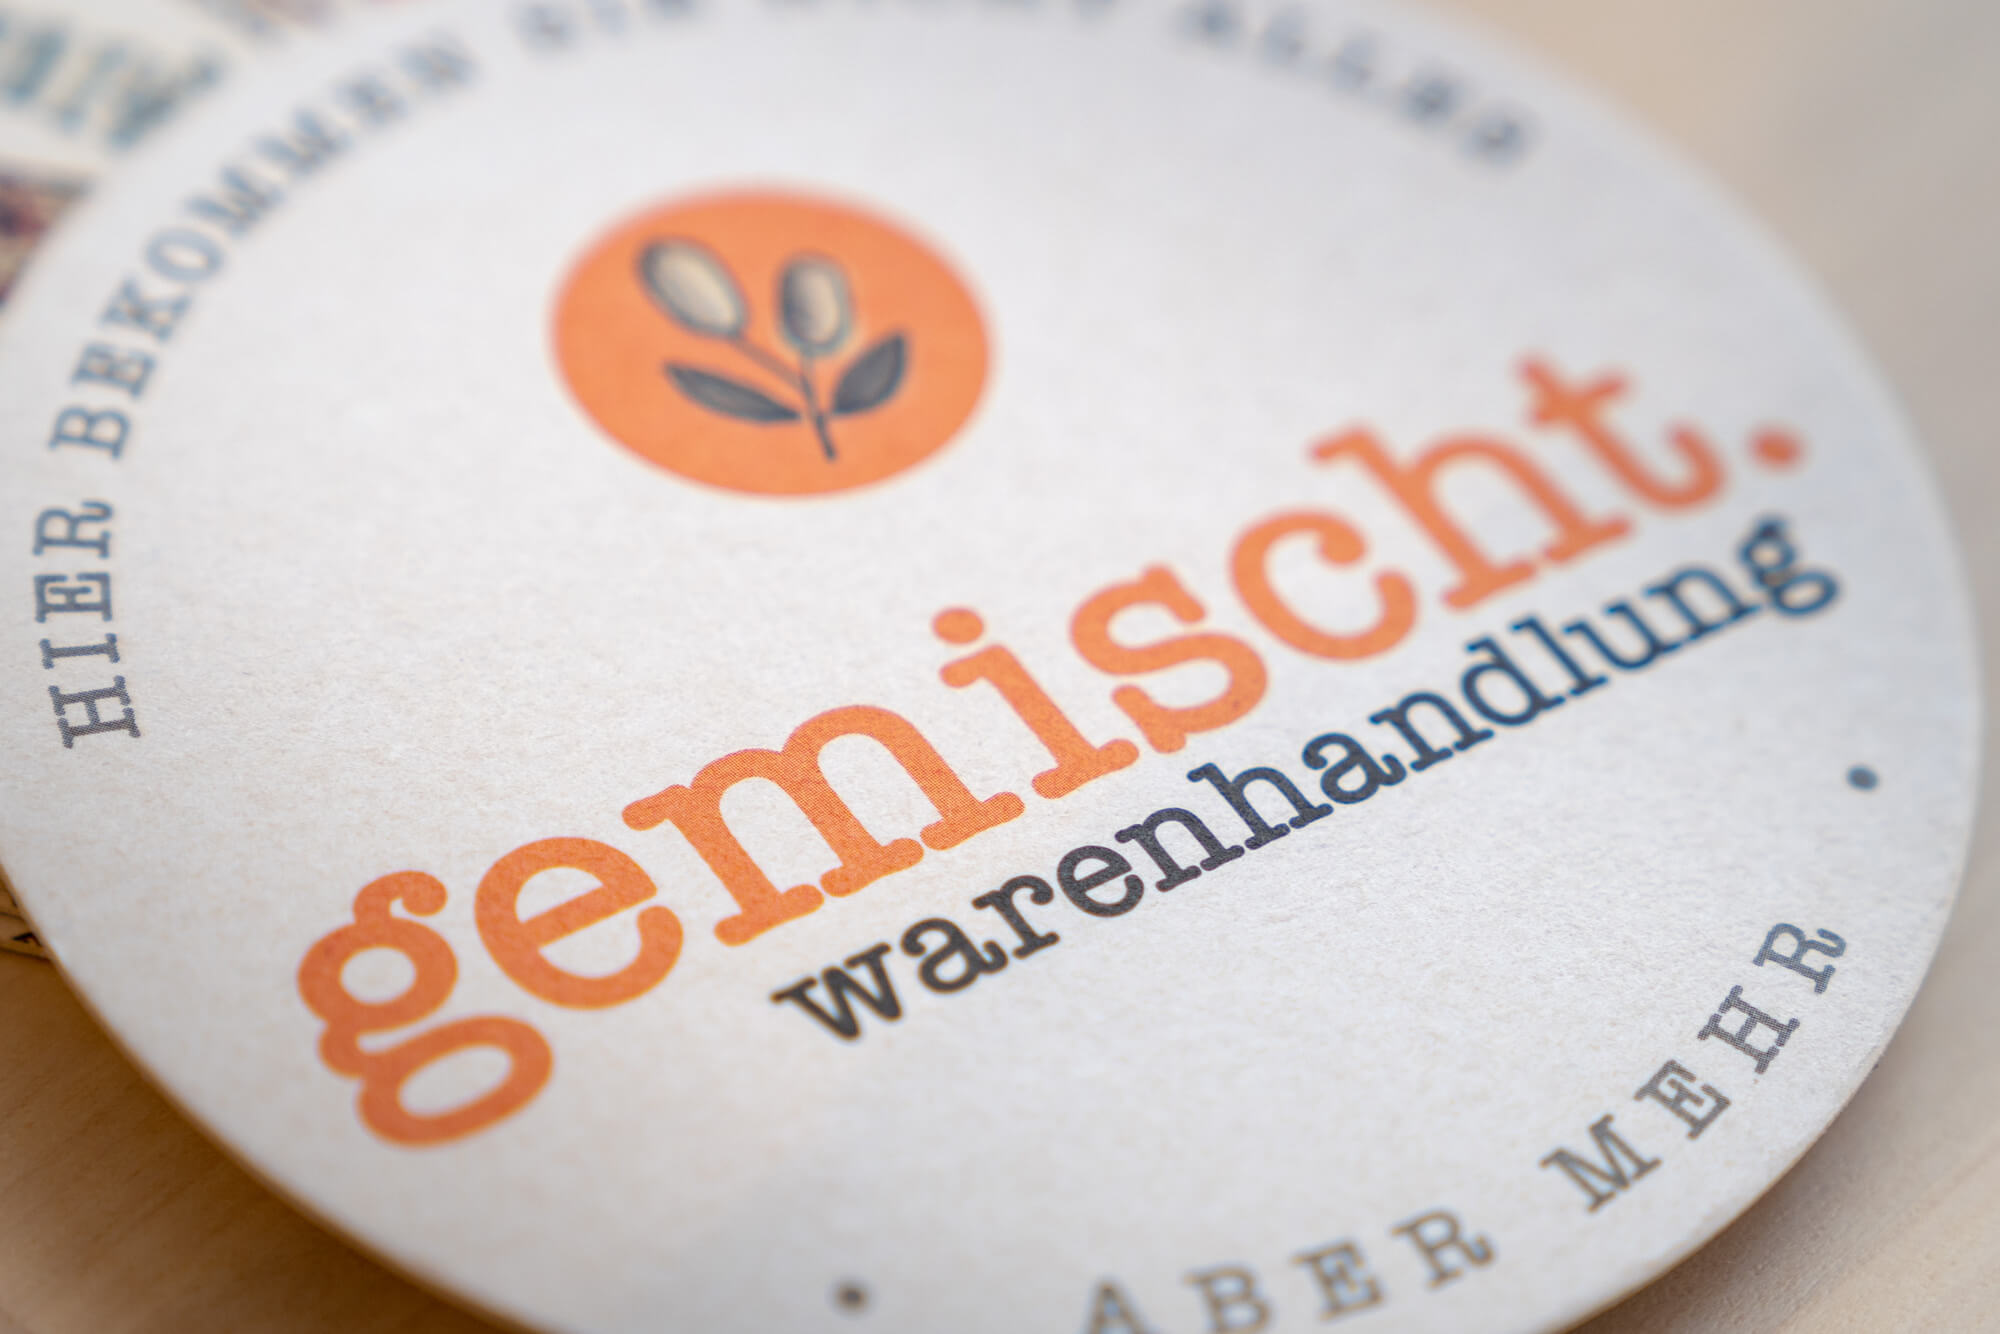 (c) Gemischt.at